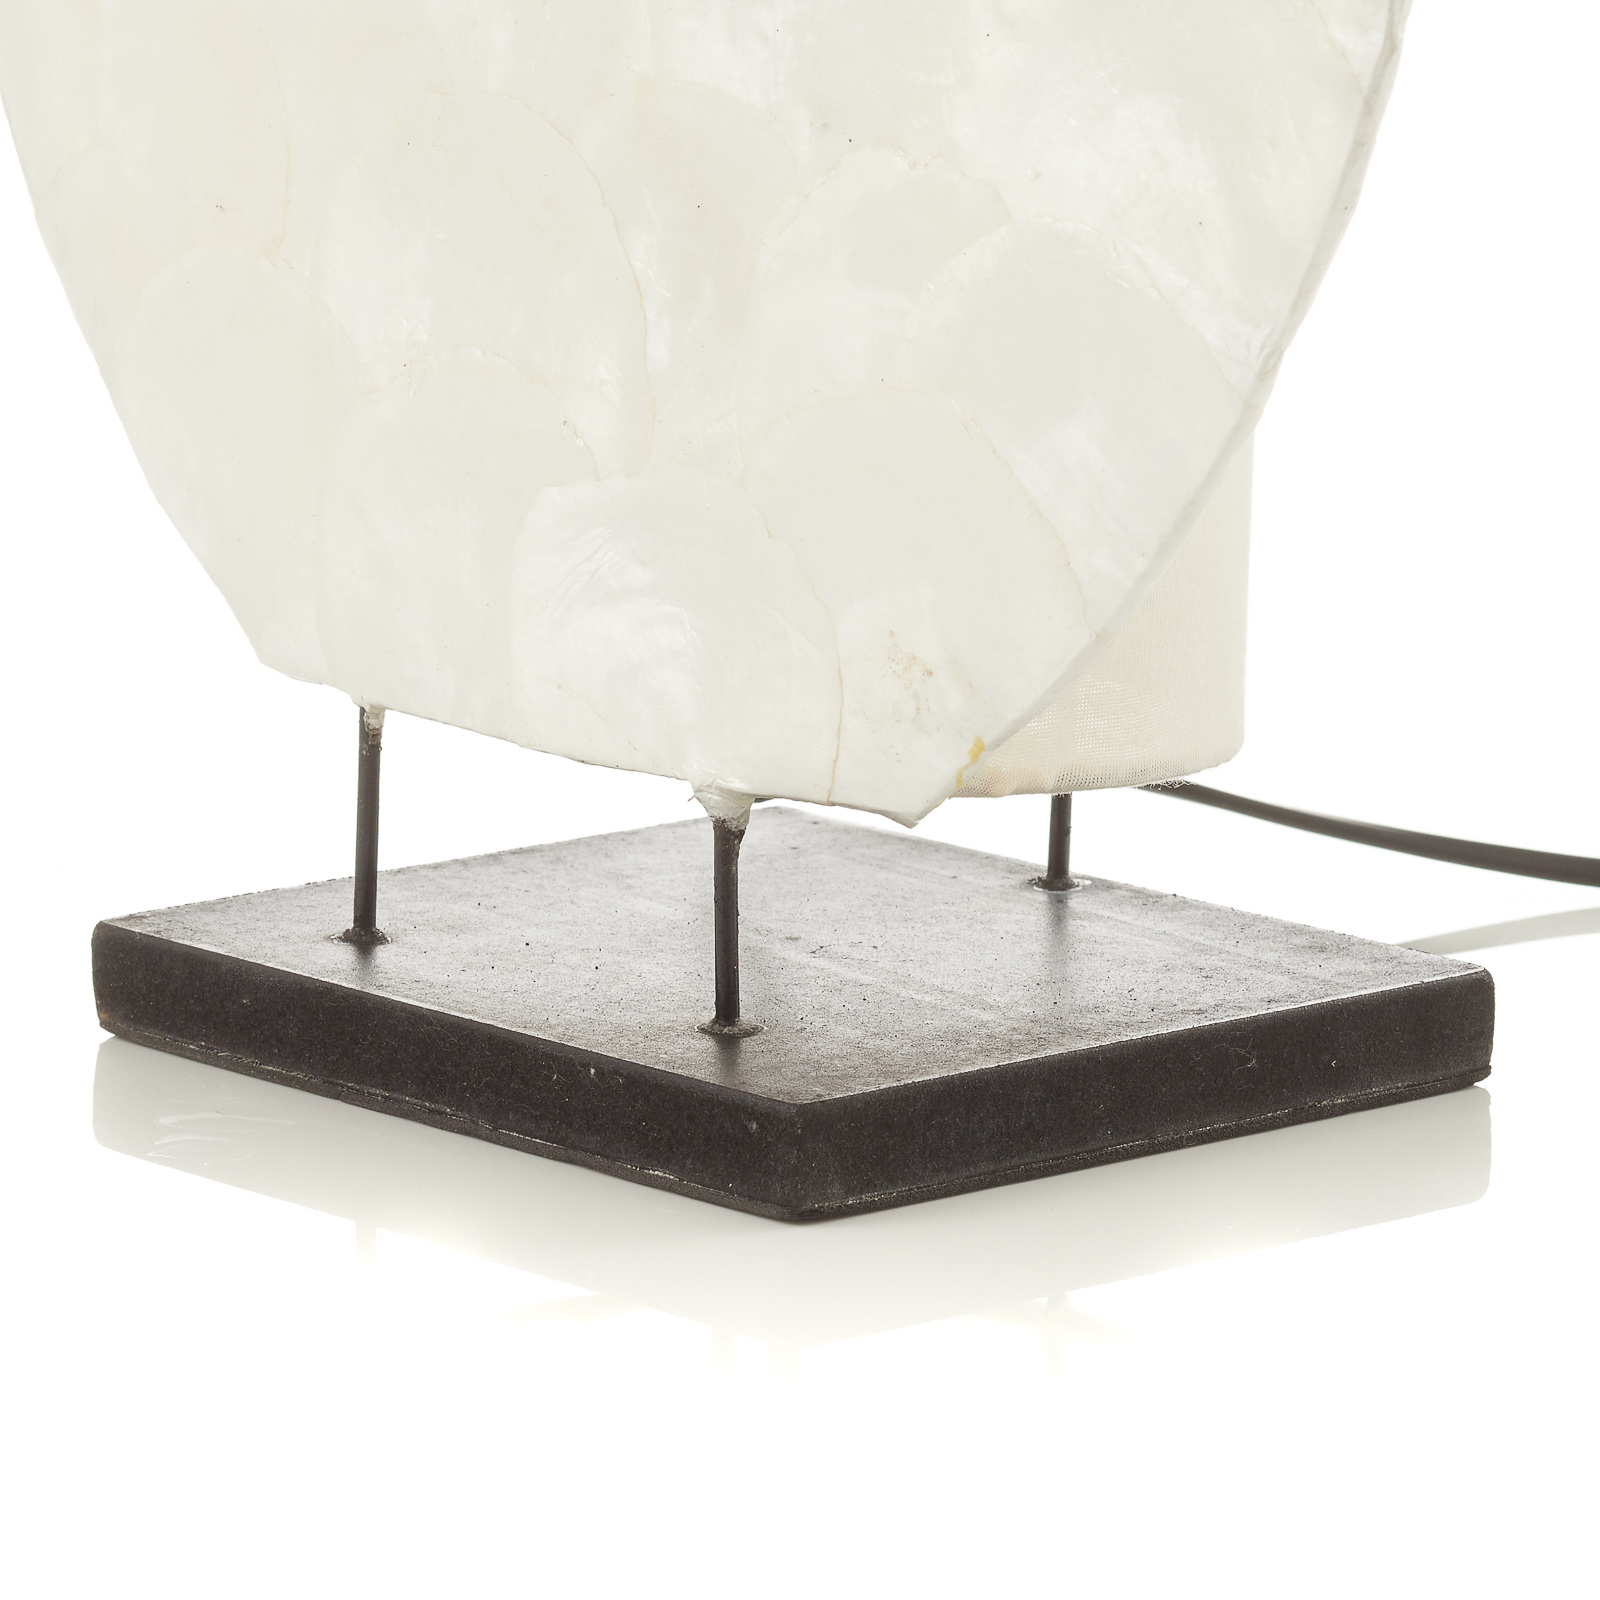 Yoko decorative table lamp